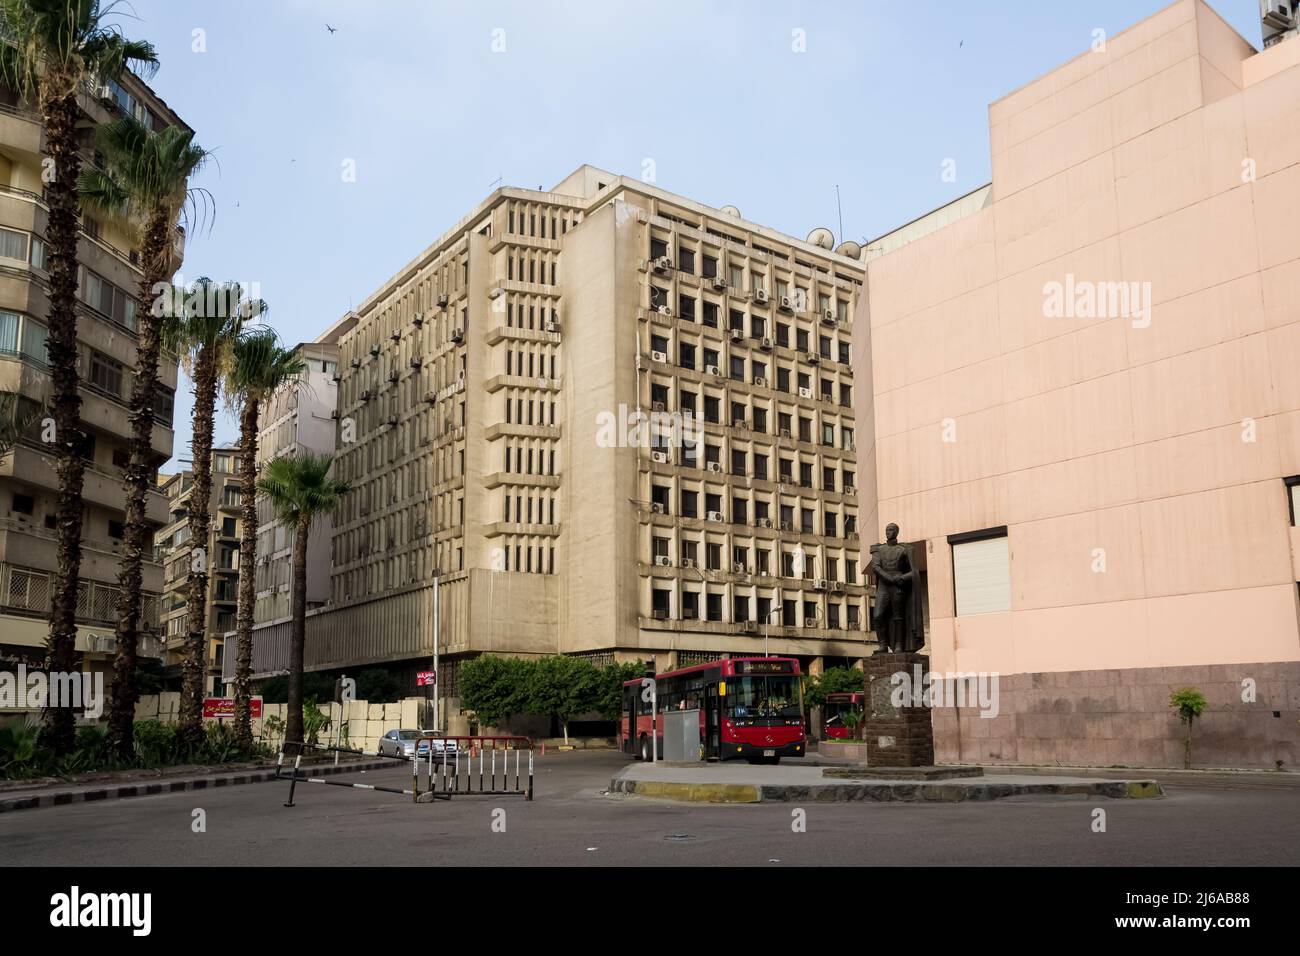 Paysage urbain de la place Simon Bolivar situé à quelques mètres de la place El Tahrir dans le centre du Caire Banque D'Images